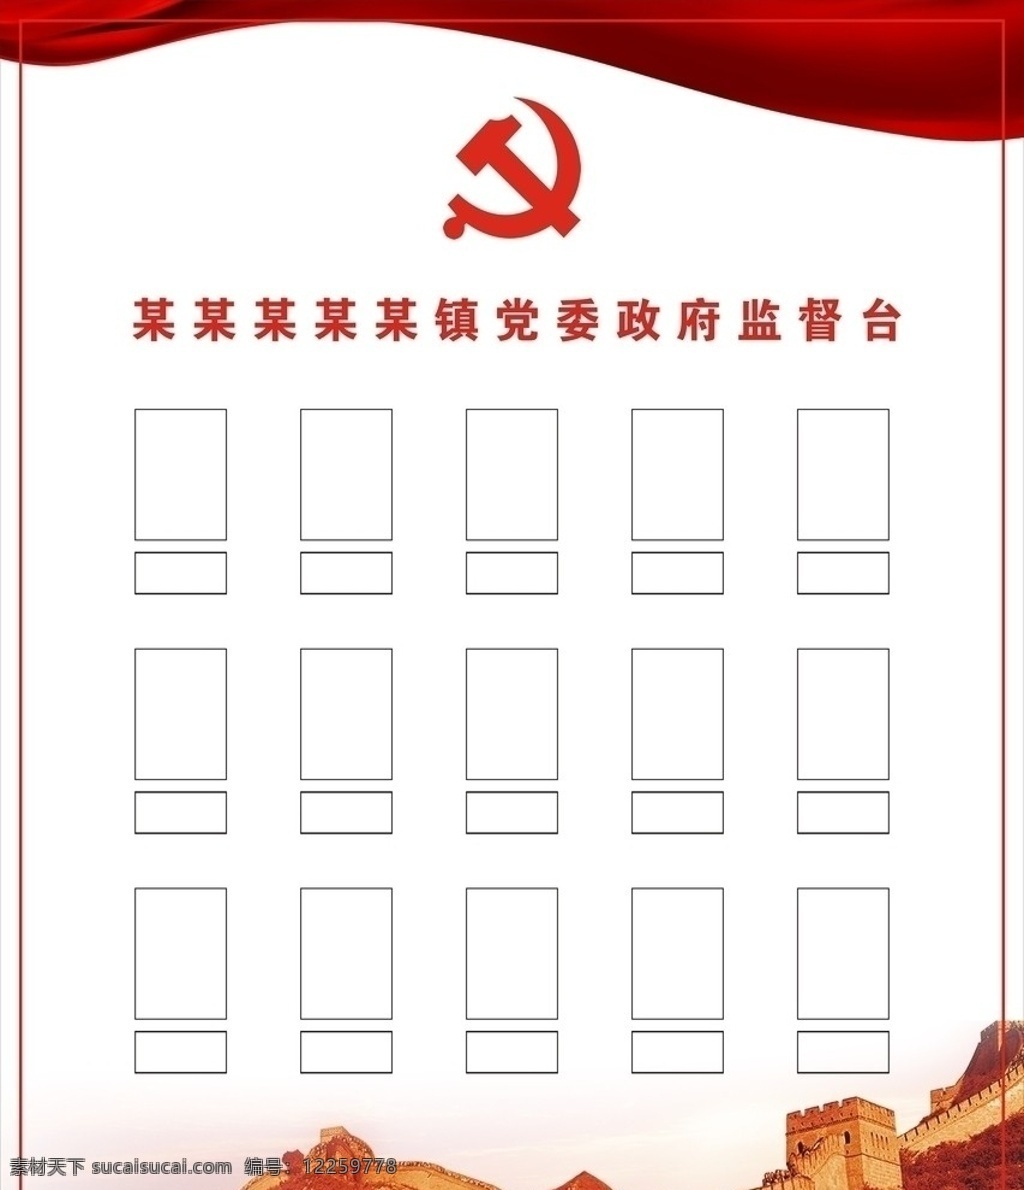 监督台 政府 共产党 展板模板 矢量